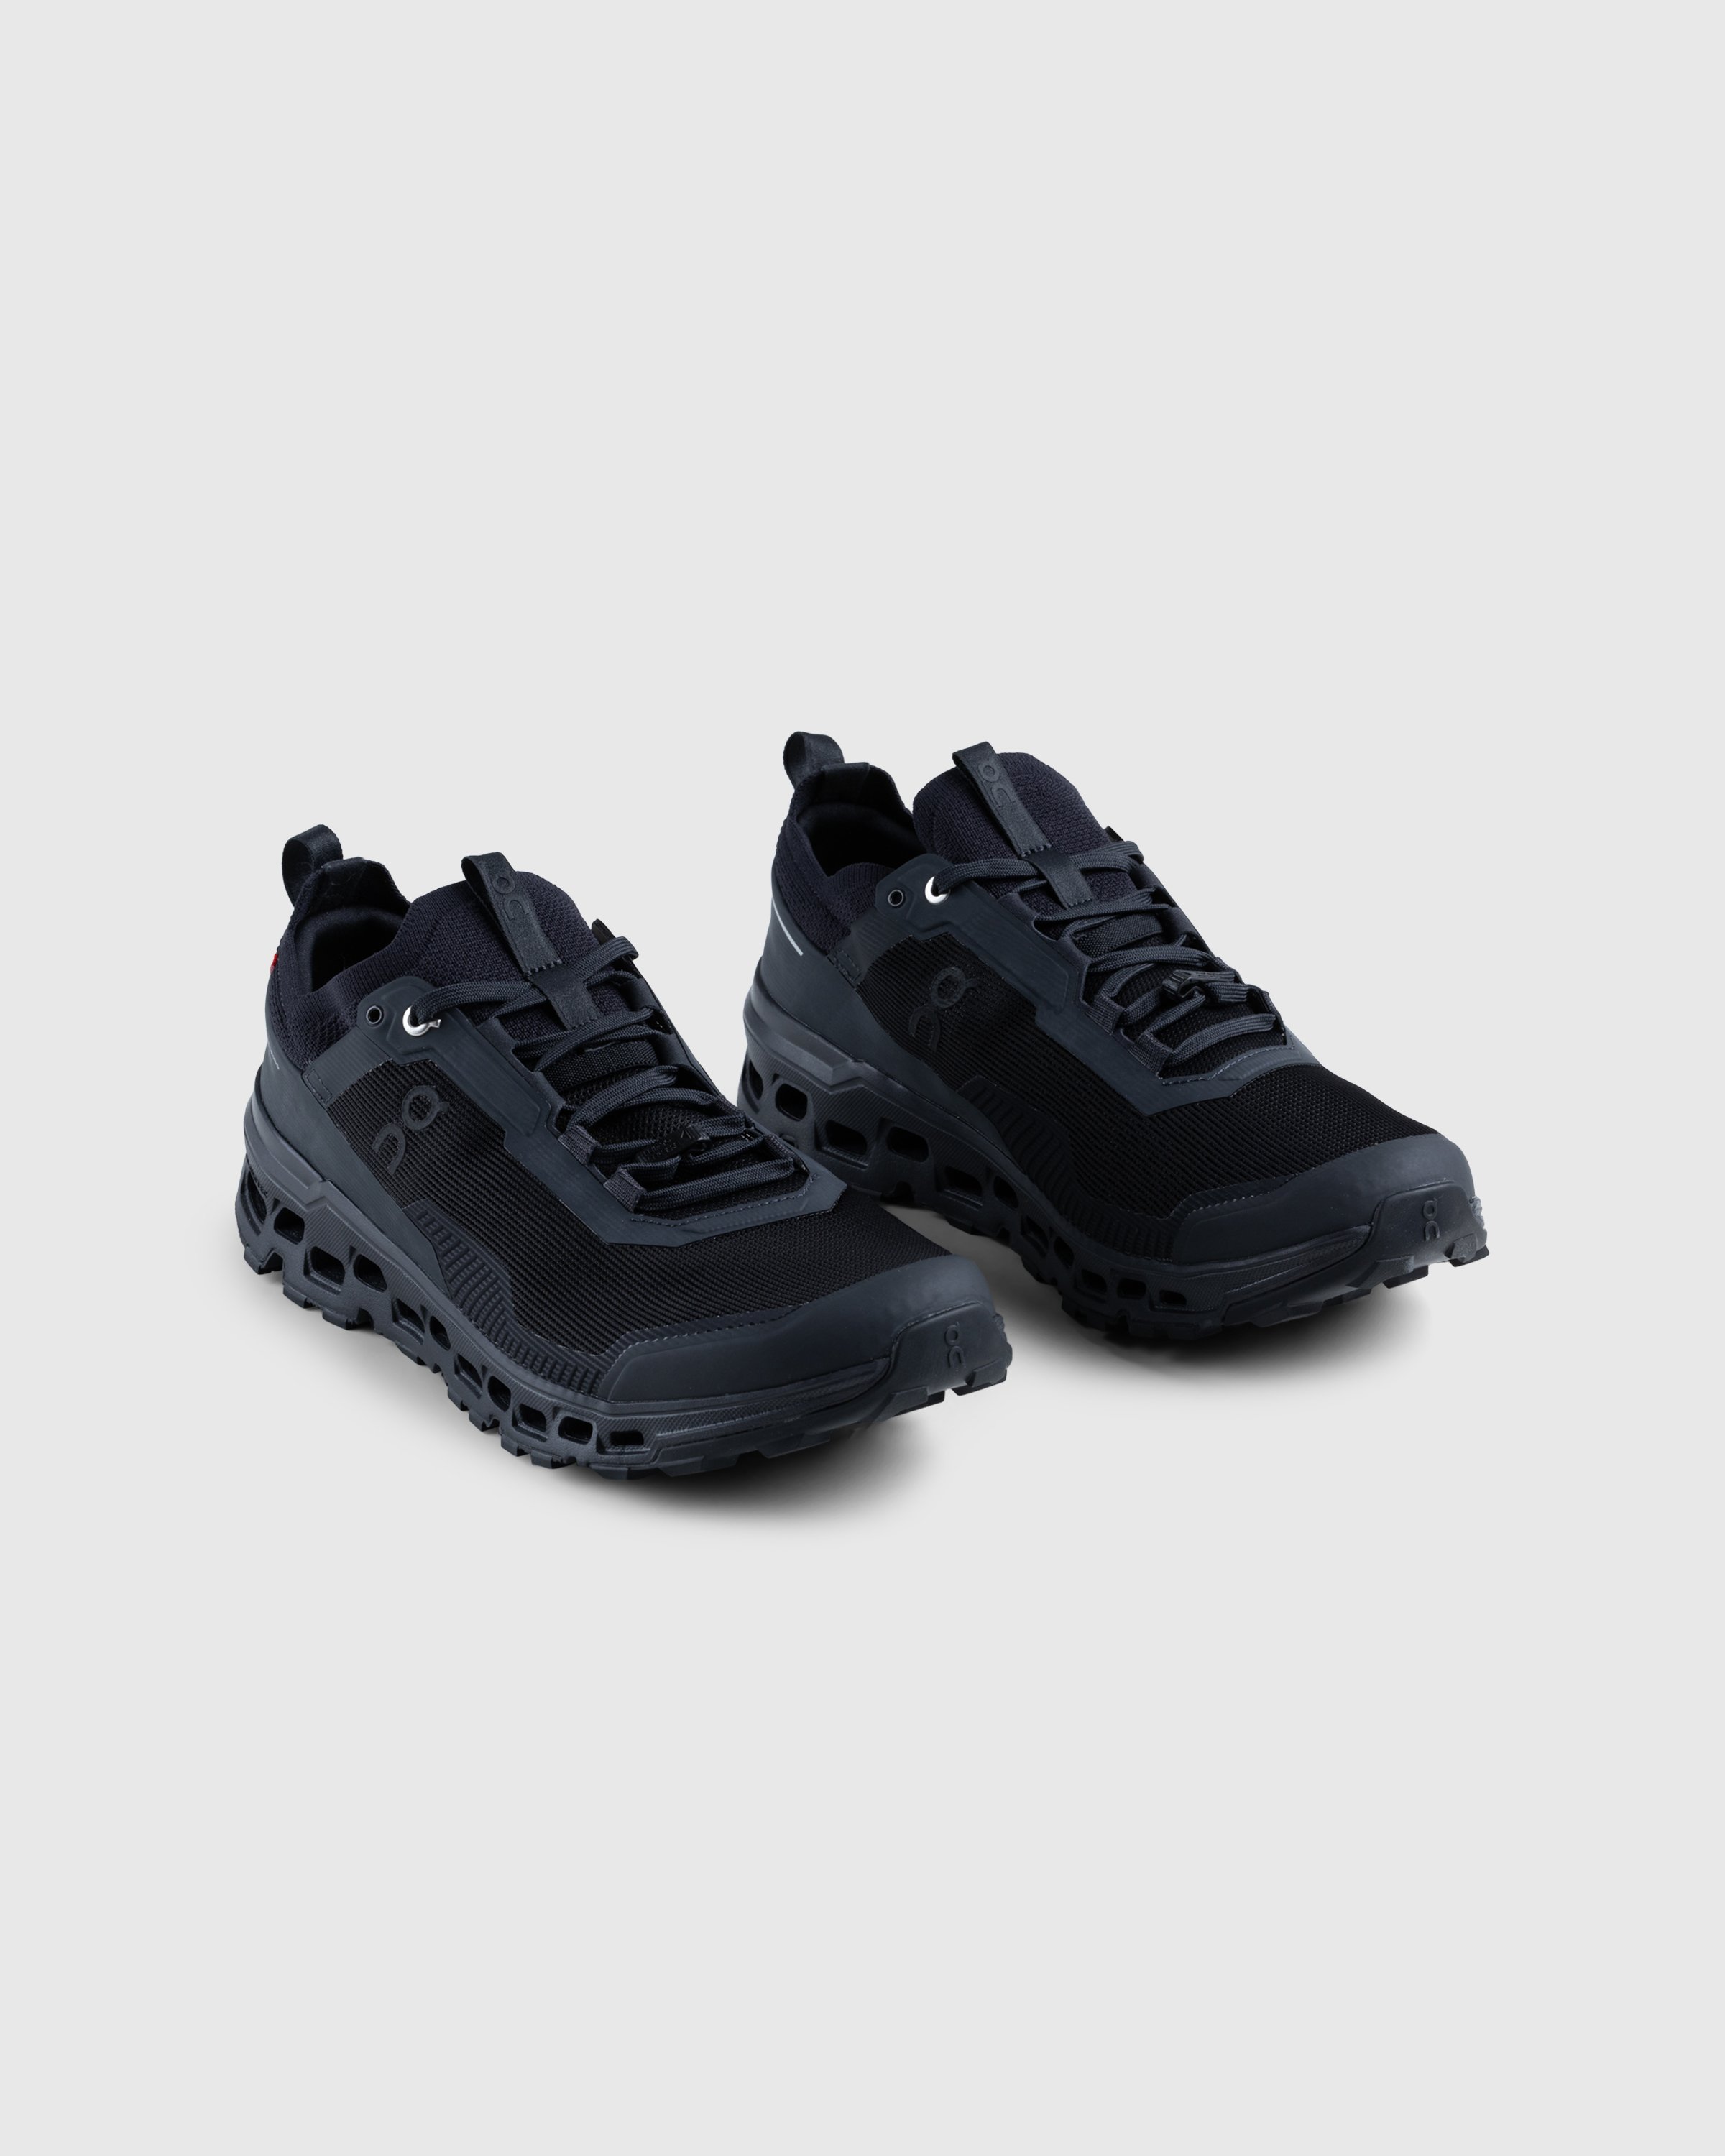 On - Cloudultra 2 Black - Footwear - Black - Image 3